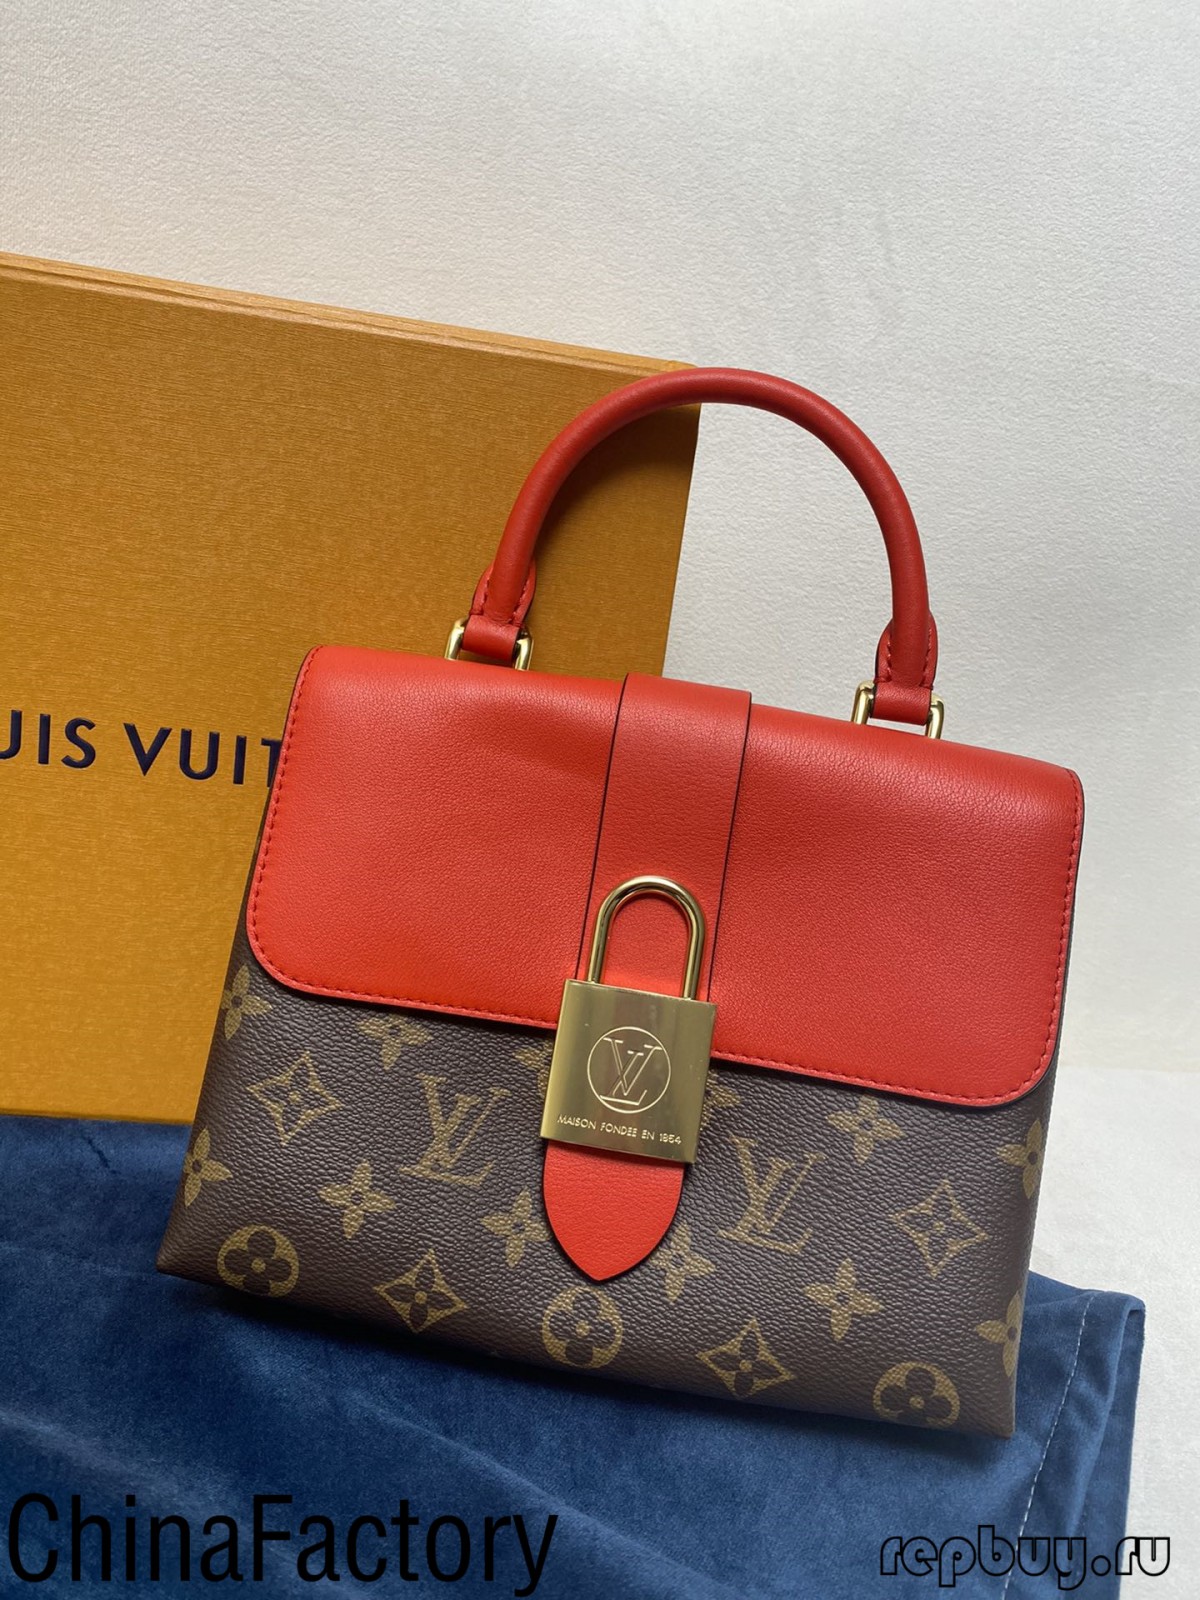 Noen aaa replika vesker anmeldelser å dele (2022 ny utgave)-Best Quality Fake Louis Vuitton Bag Nettbutikk, Replica designer bag ru